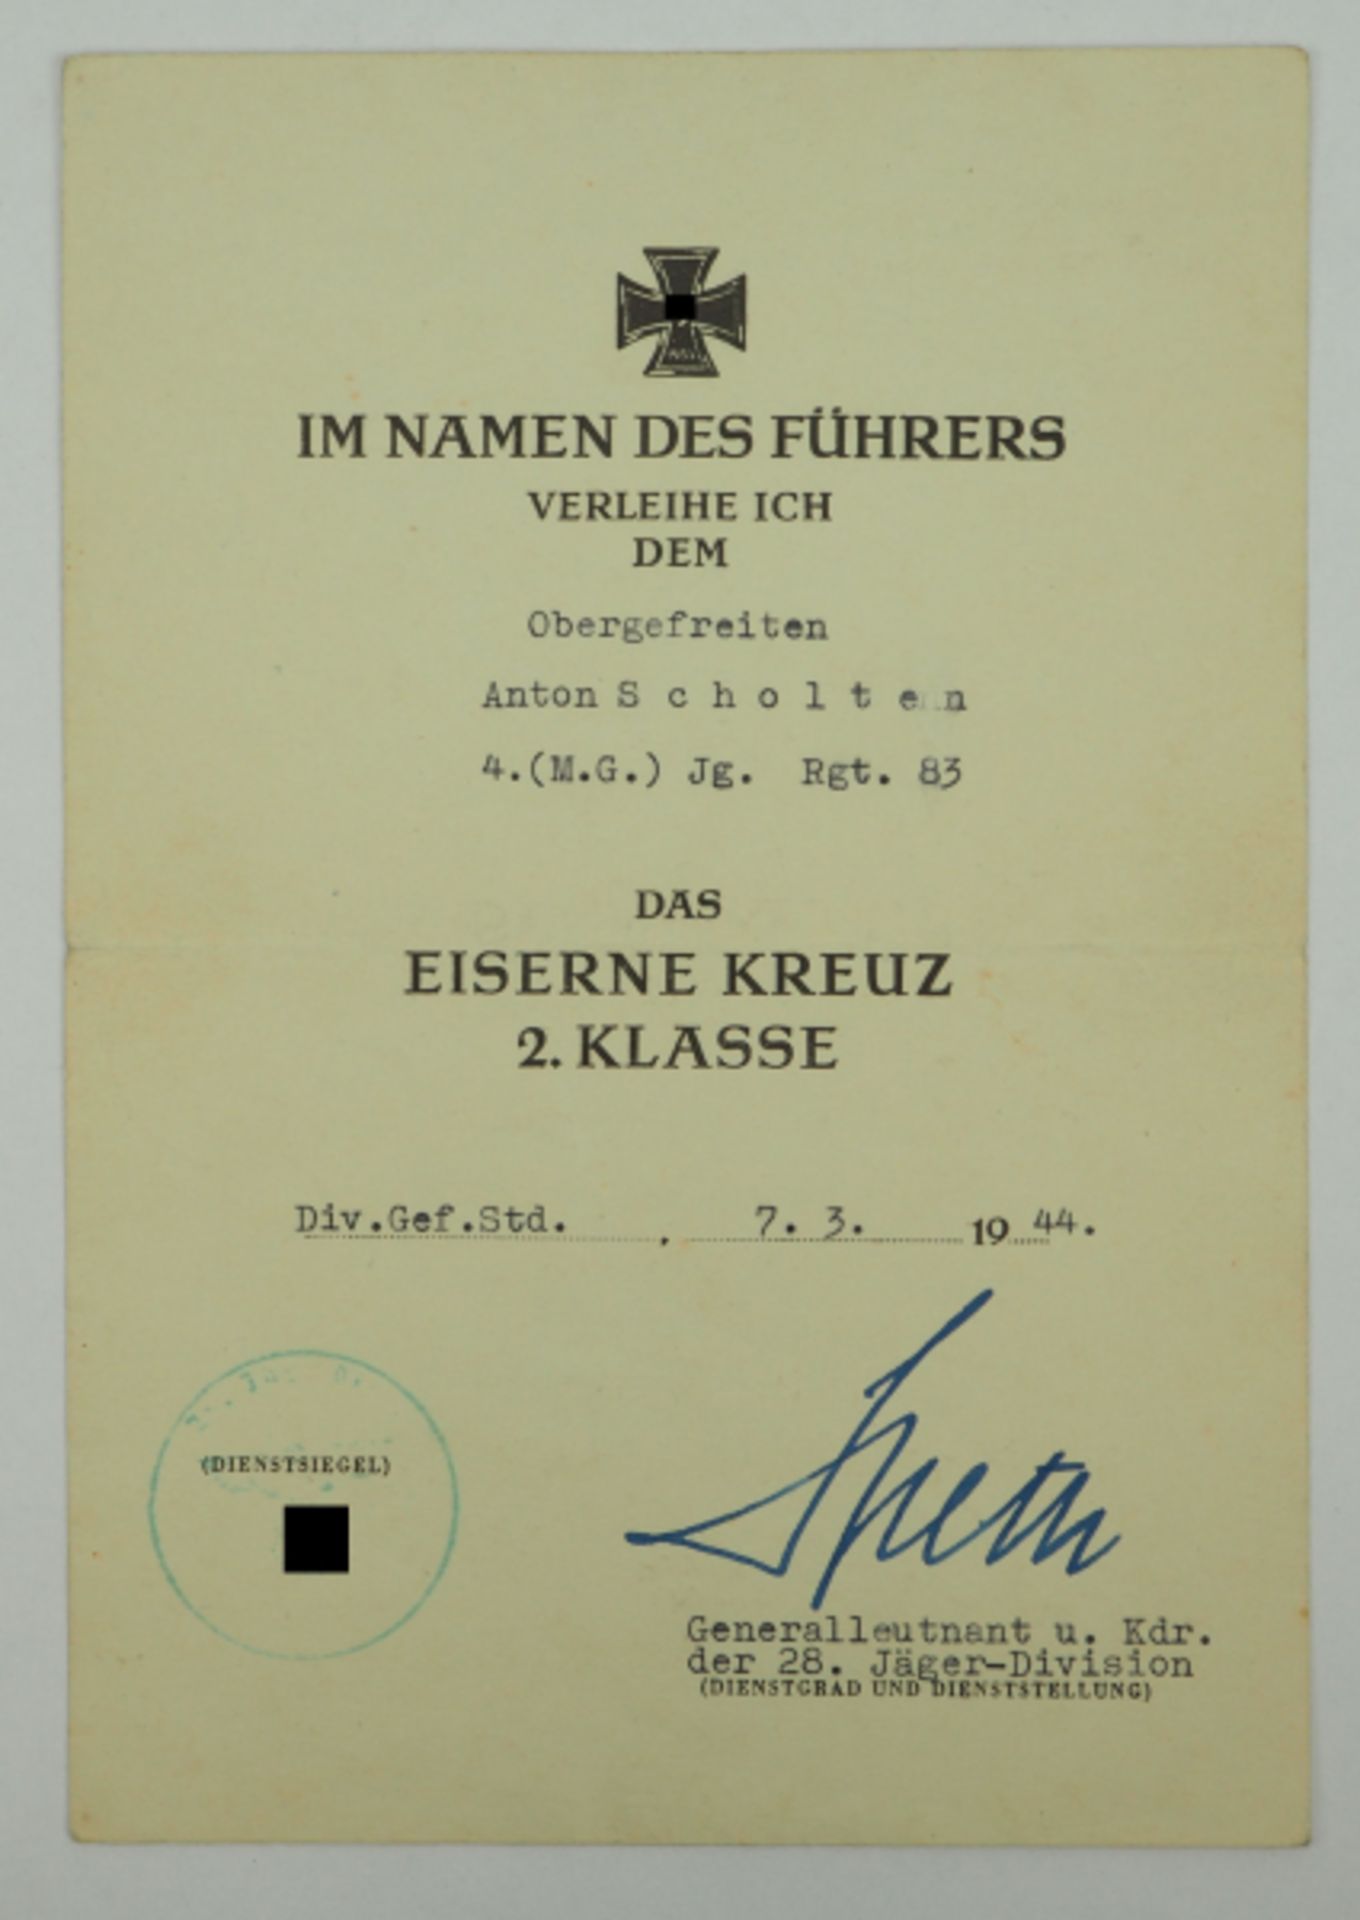 Eisernes Kreuz, 1939, 2. Klasse Urkunde für einen Obergefreiten der 4. (M.G.)/ Jg. Rgt. 83 - Hans